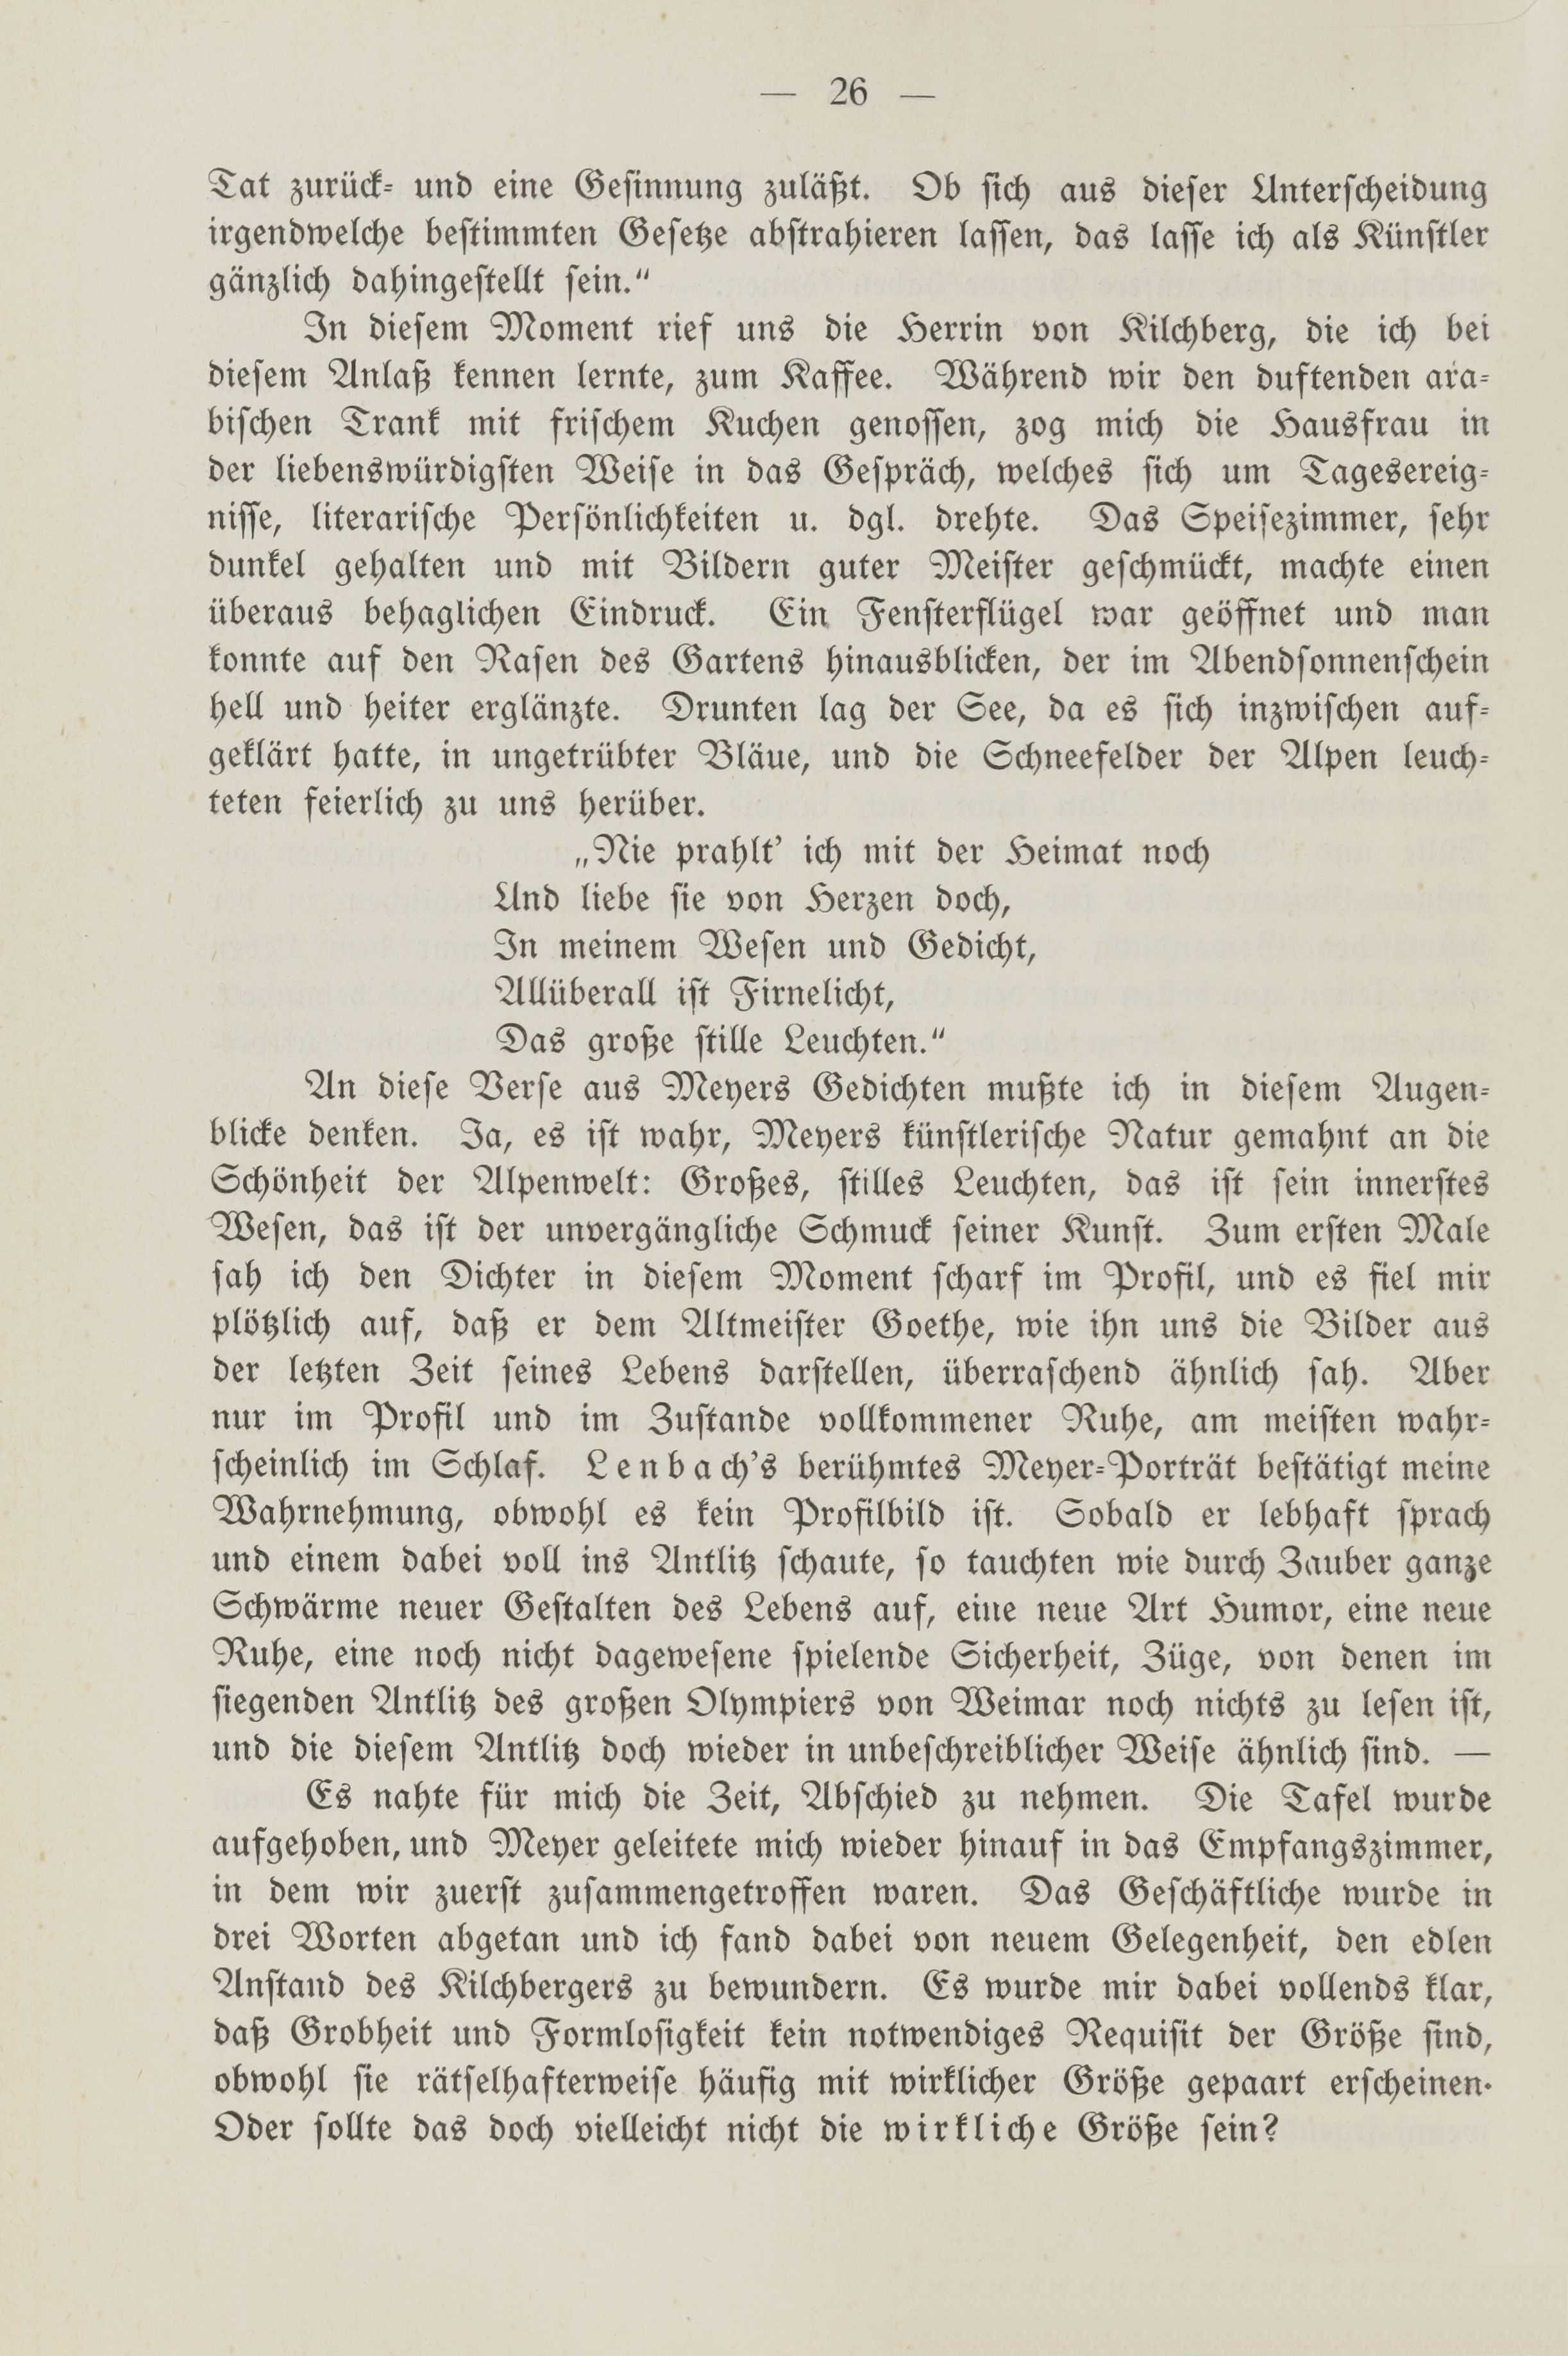 Deutsche Monatsschrift für Russland [2] (1913) | 30. (26) Main body of text